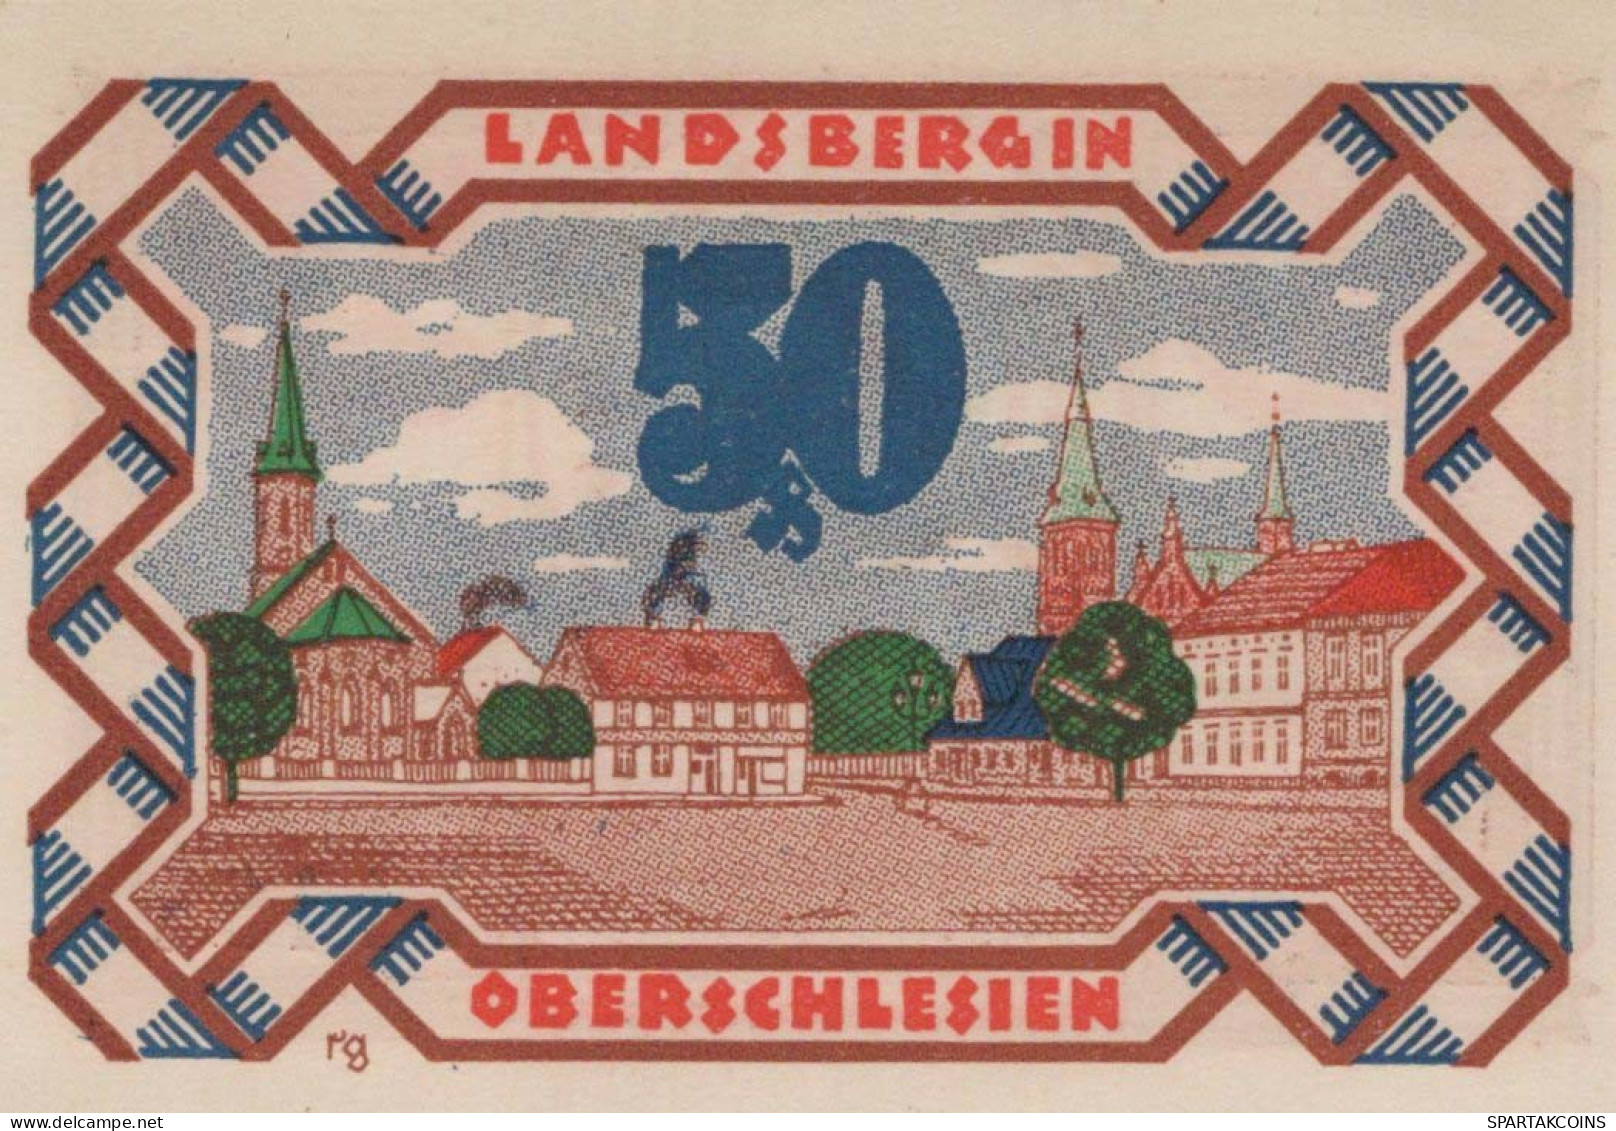 50 PFENNIG 1922 Stadt LANDSBERG OBERSCHLESIEN UNC DEUTSCHLAND #PB932 - [11] Local Banknote Issues